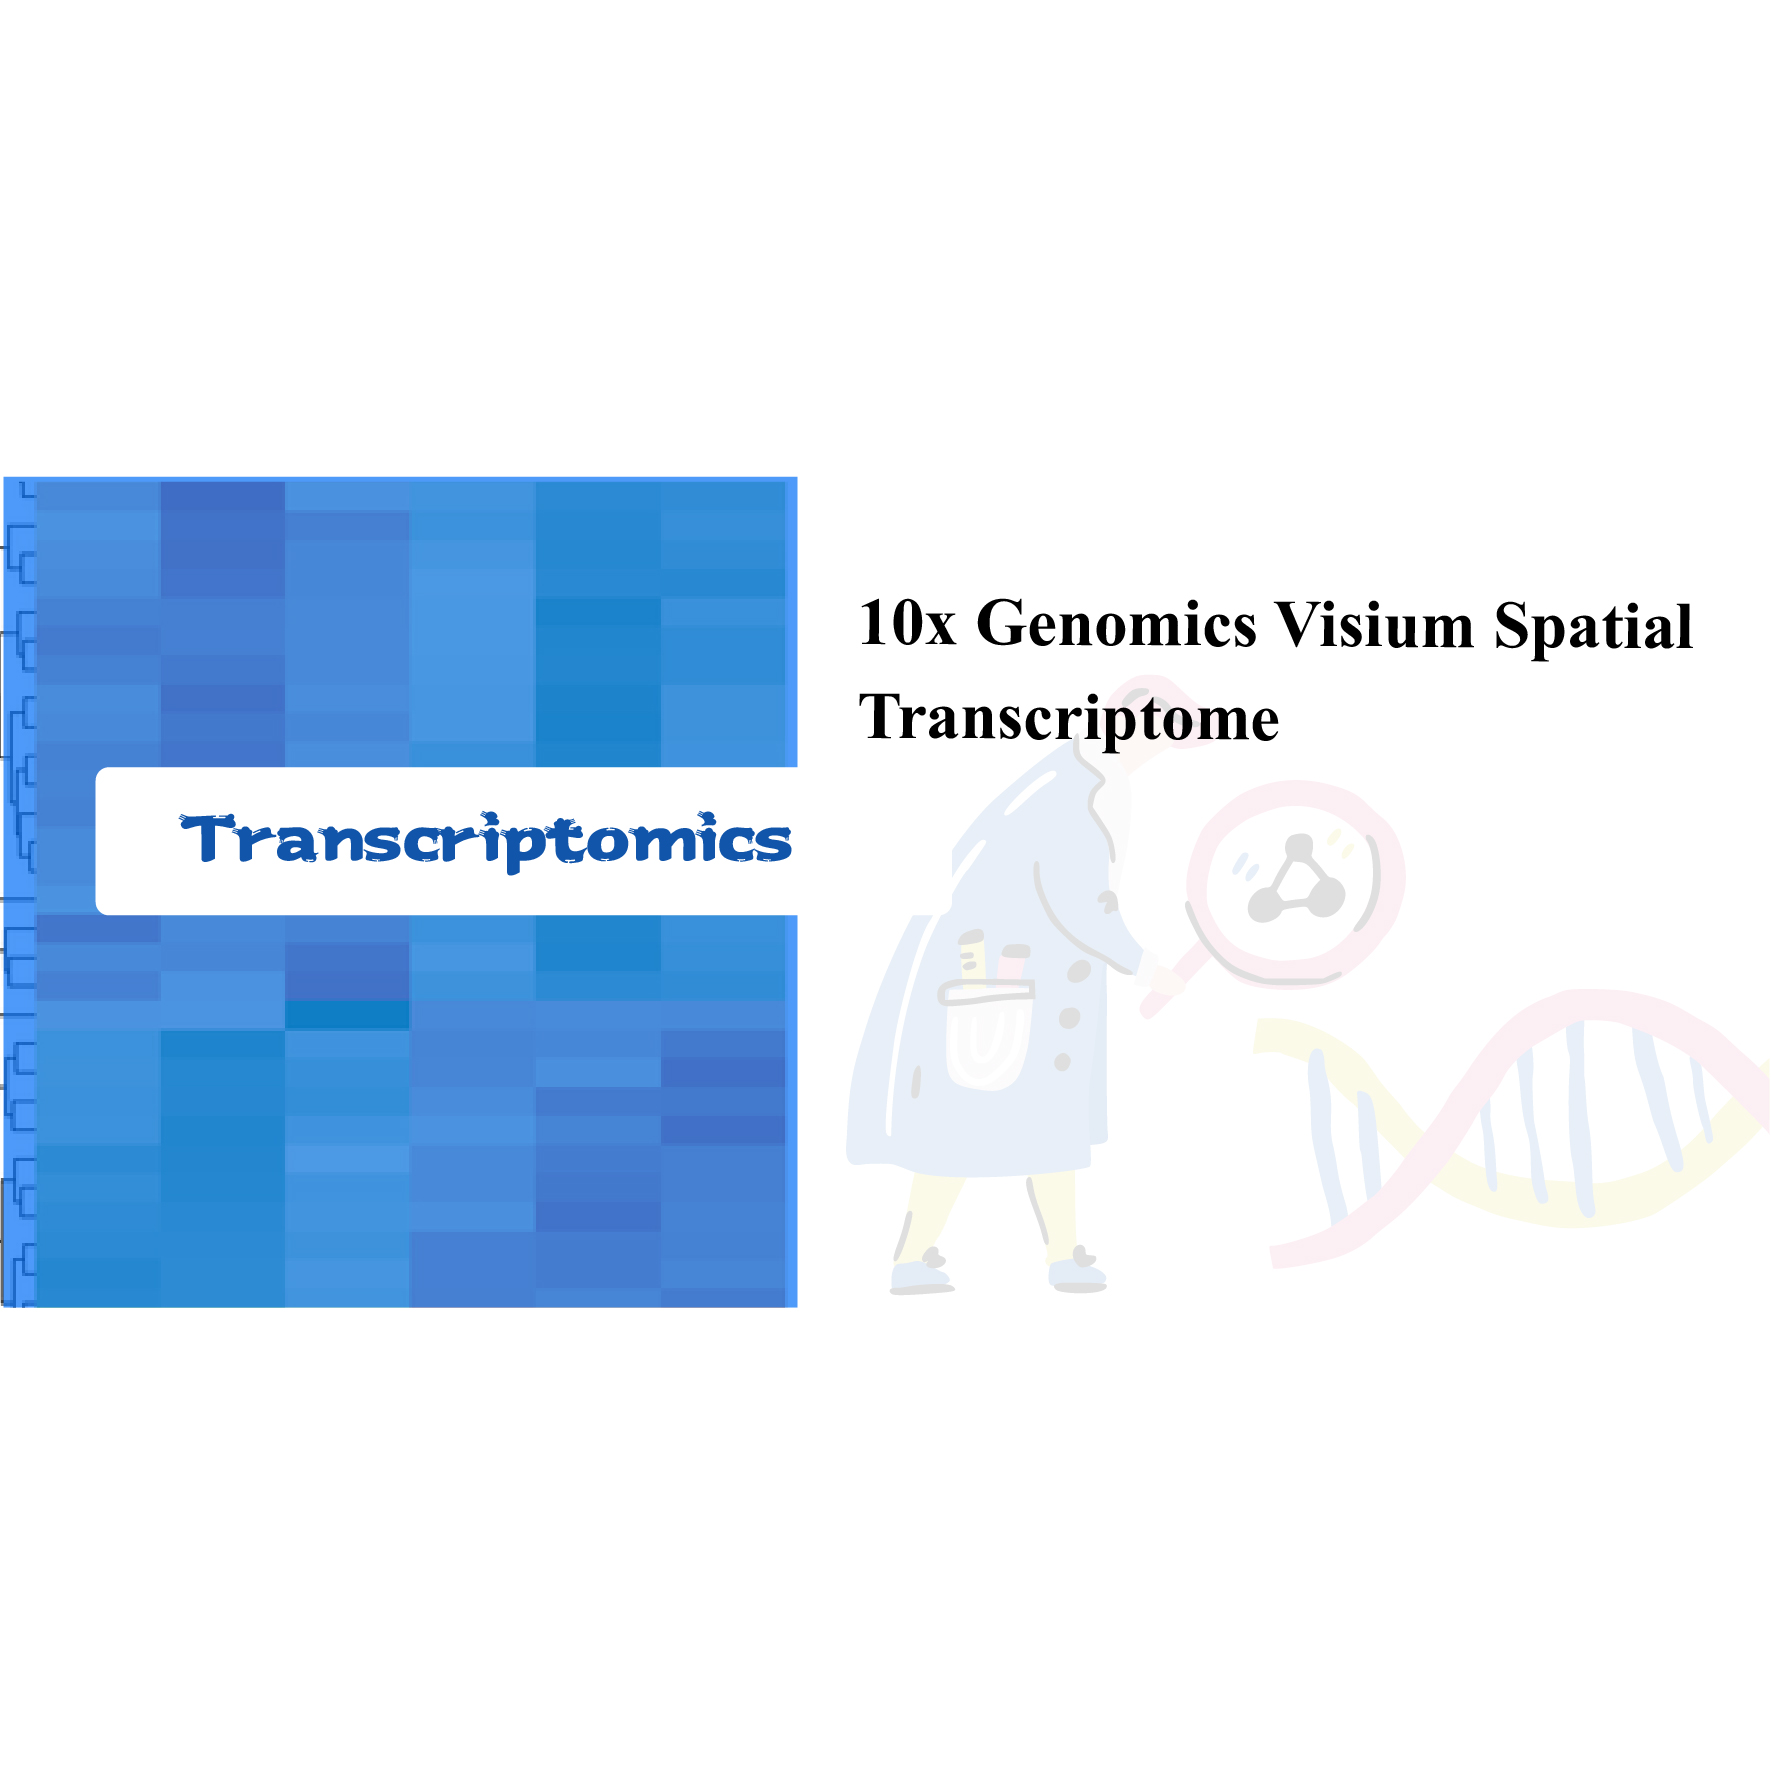 10x Genomics Visium Spatial Transcriptome